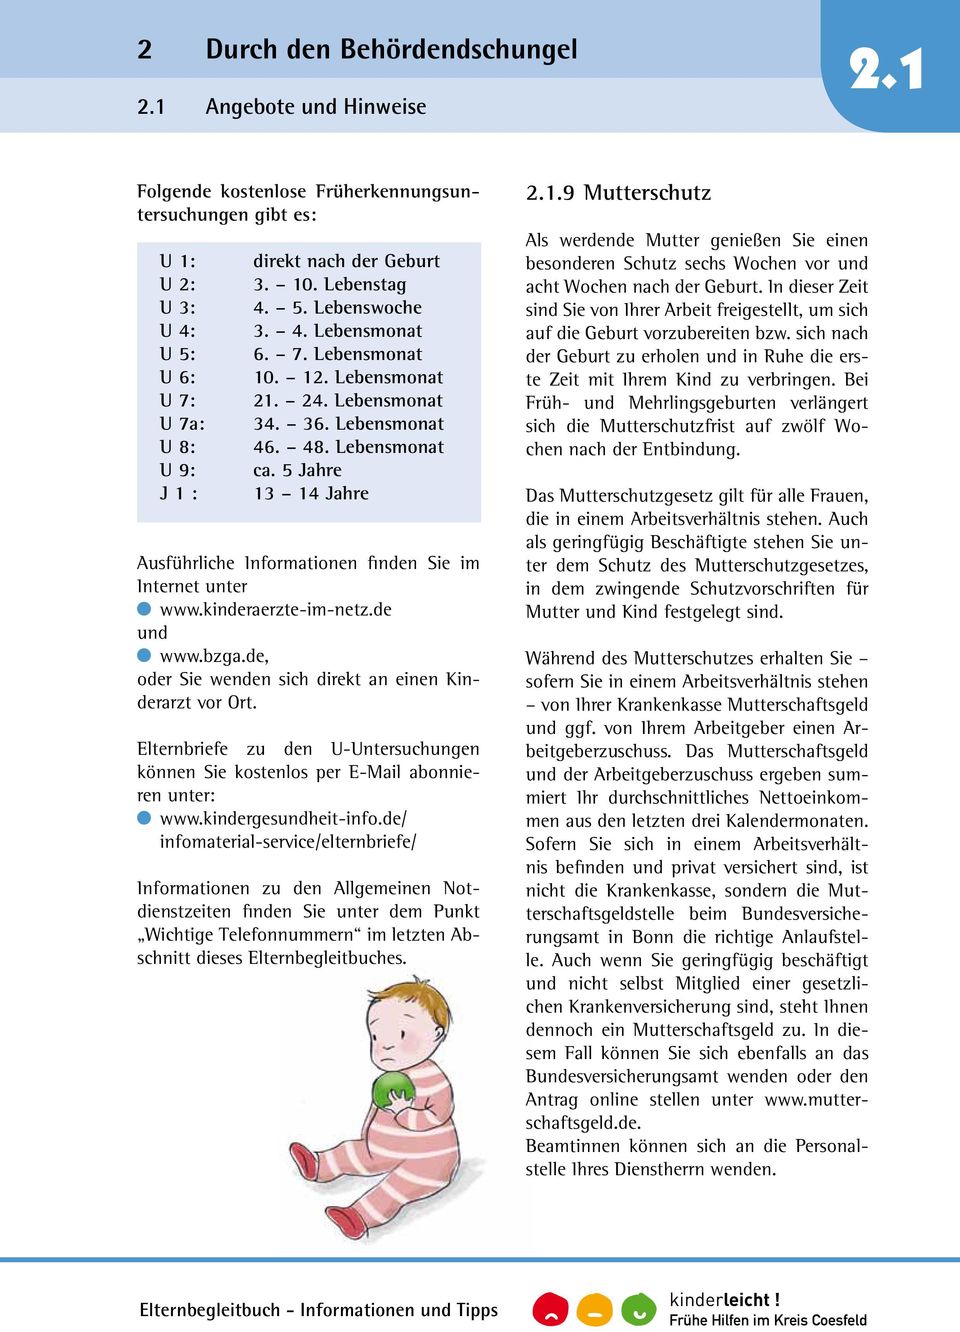 5 Jahre 13 14 Jahre Ausführliche Informationen finden Sie im Internet unter www.kinderaerzte-im-netz.de und www.bzga.de, oder Sie wenden sich direkt an einen Kinderarzt vor Ort.